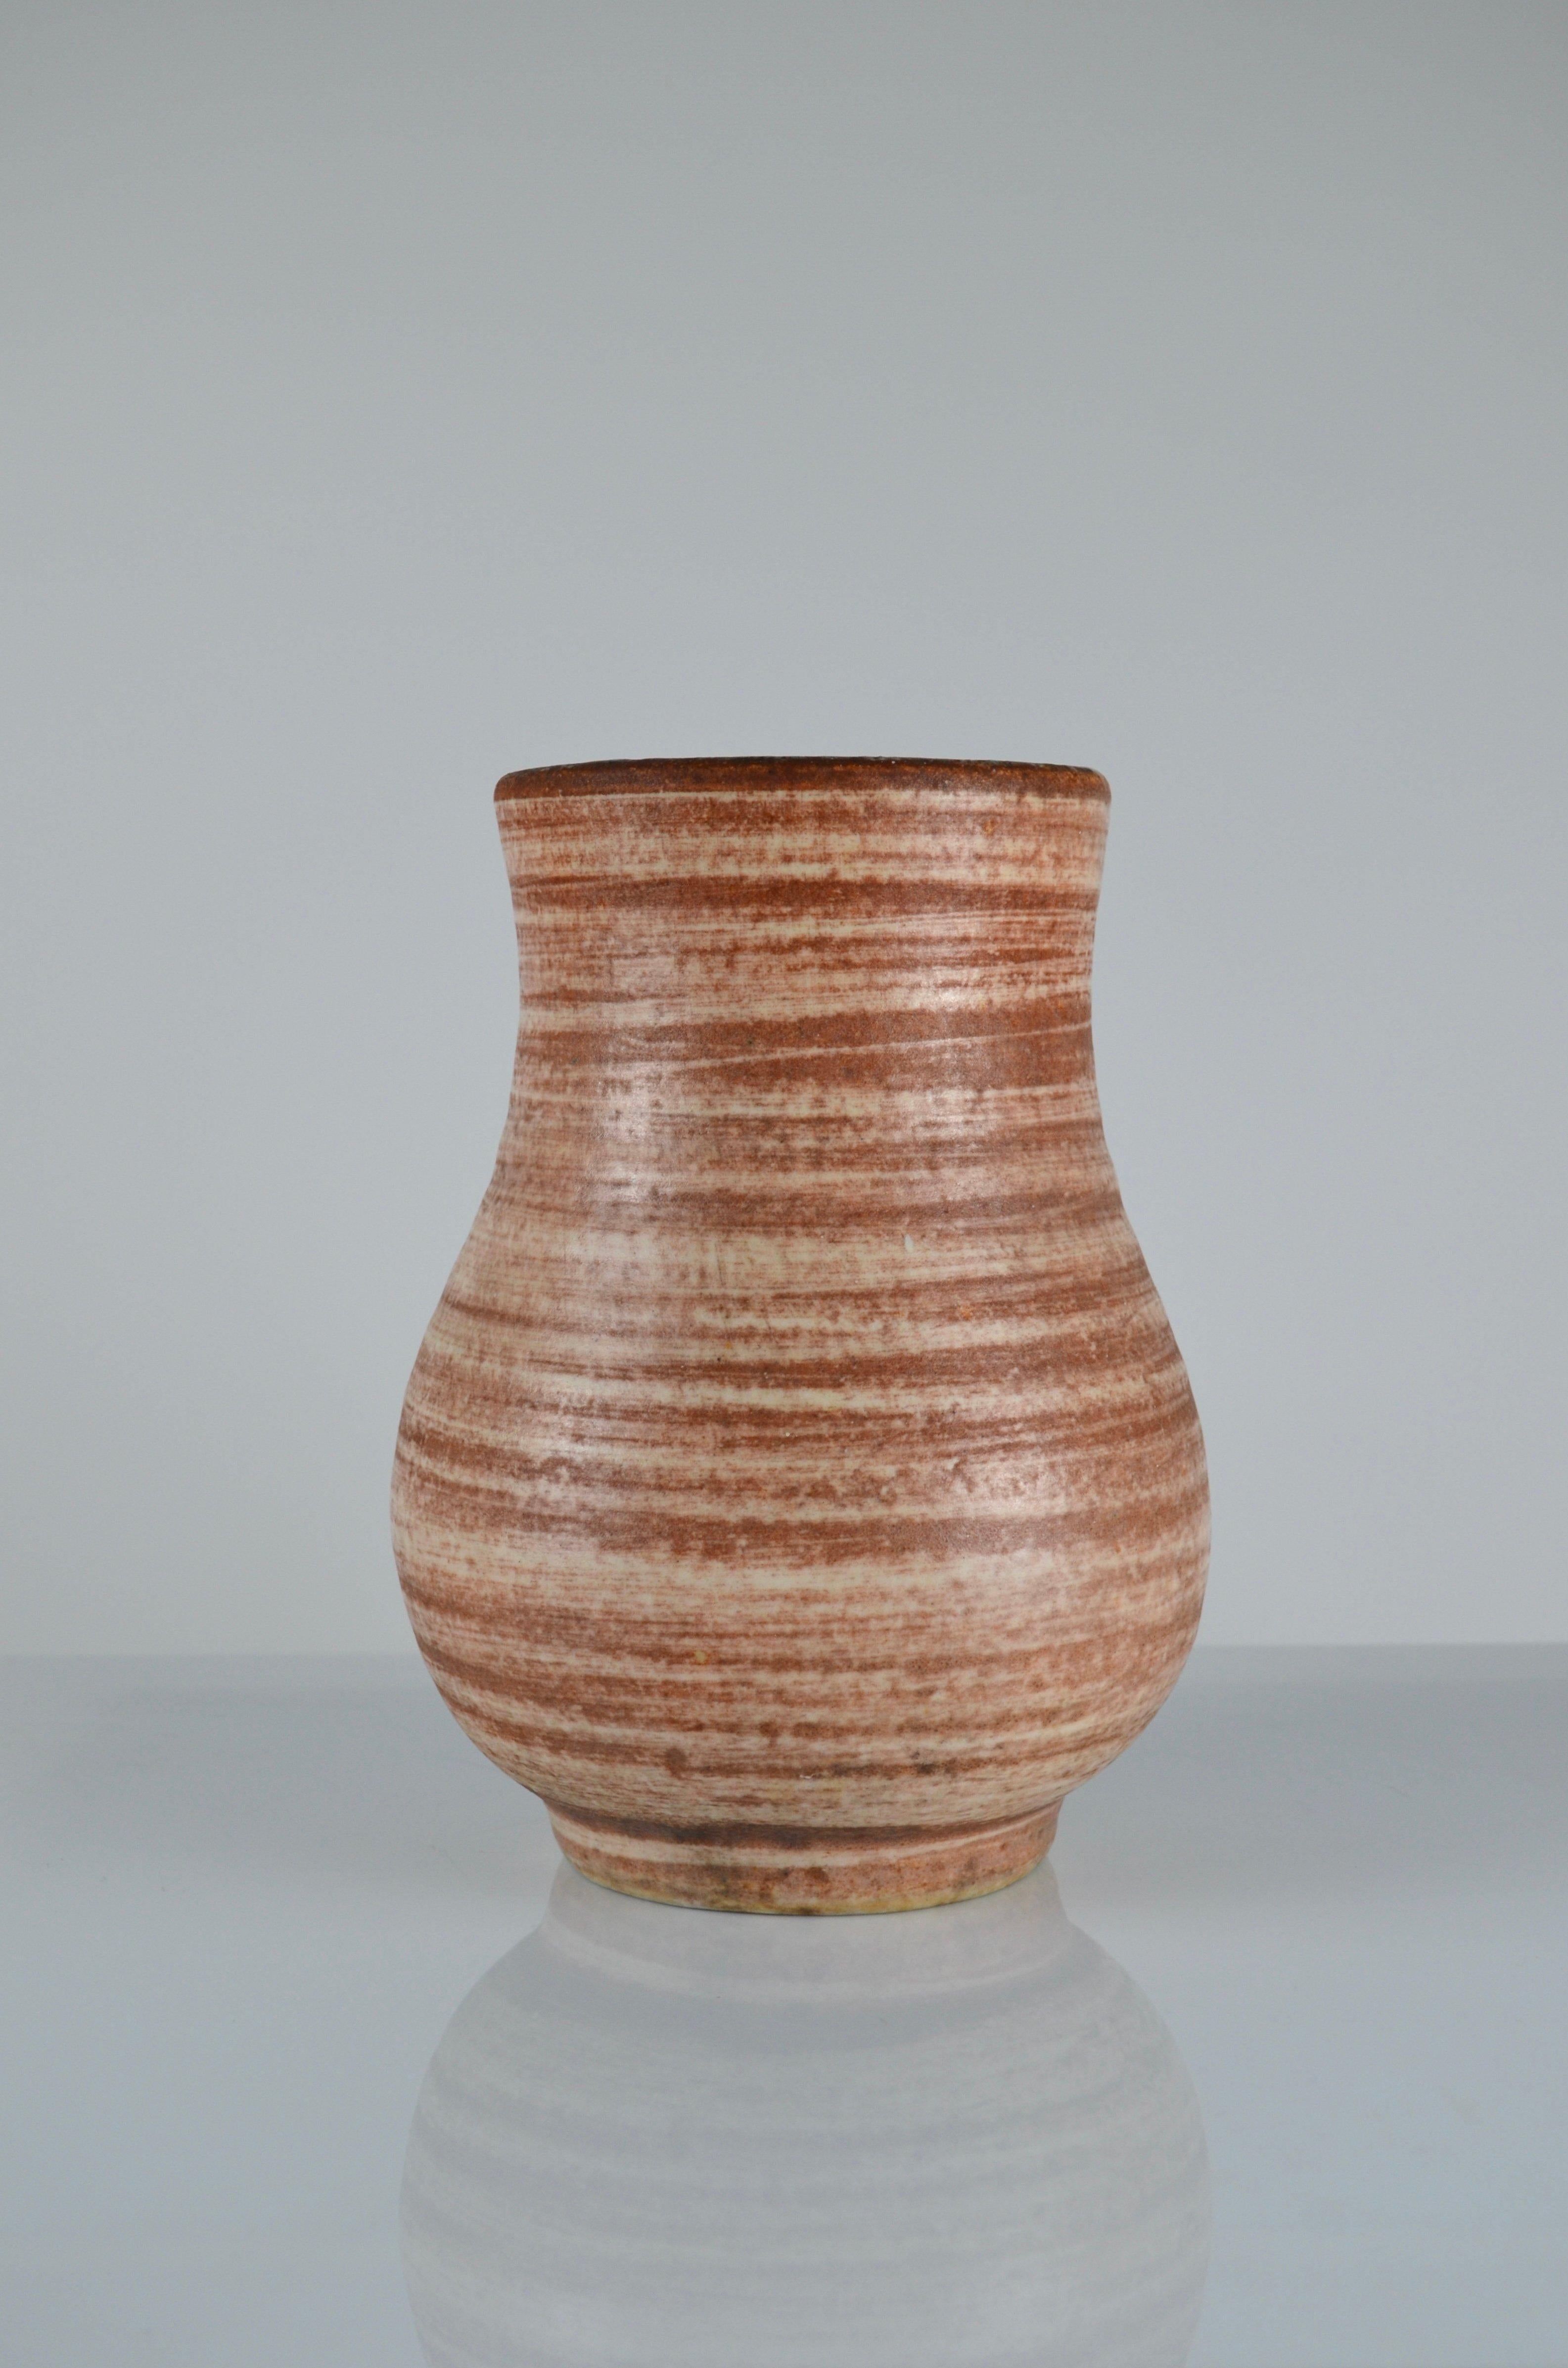 Große Vase von Accolay (Yonne, Frankreich) aus emaillierter Keramik, innen braun und schwarz
Accolay-Signatur unter dem Sockel eingeritzt
Sehr guter Zustand
60's